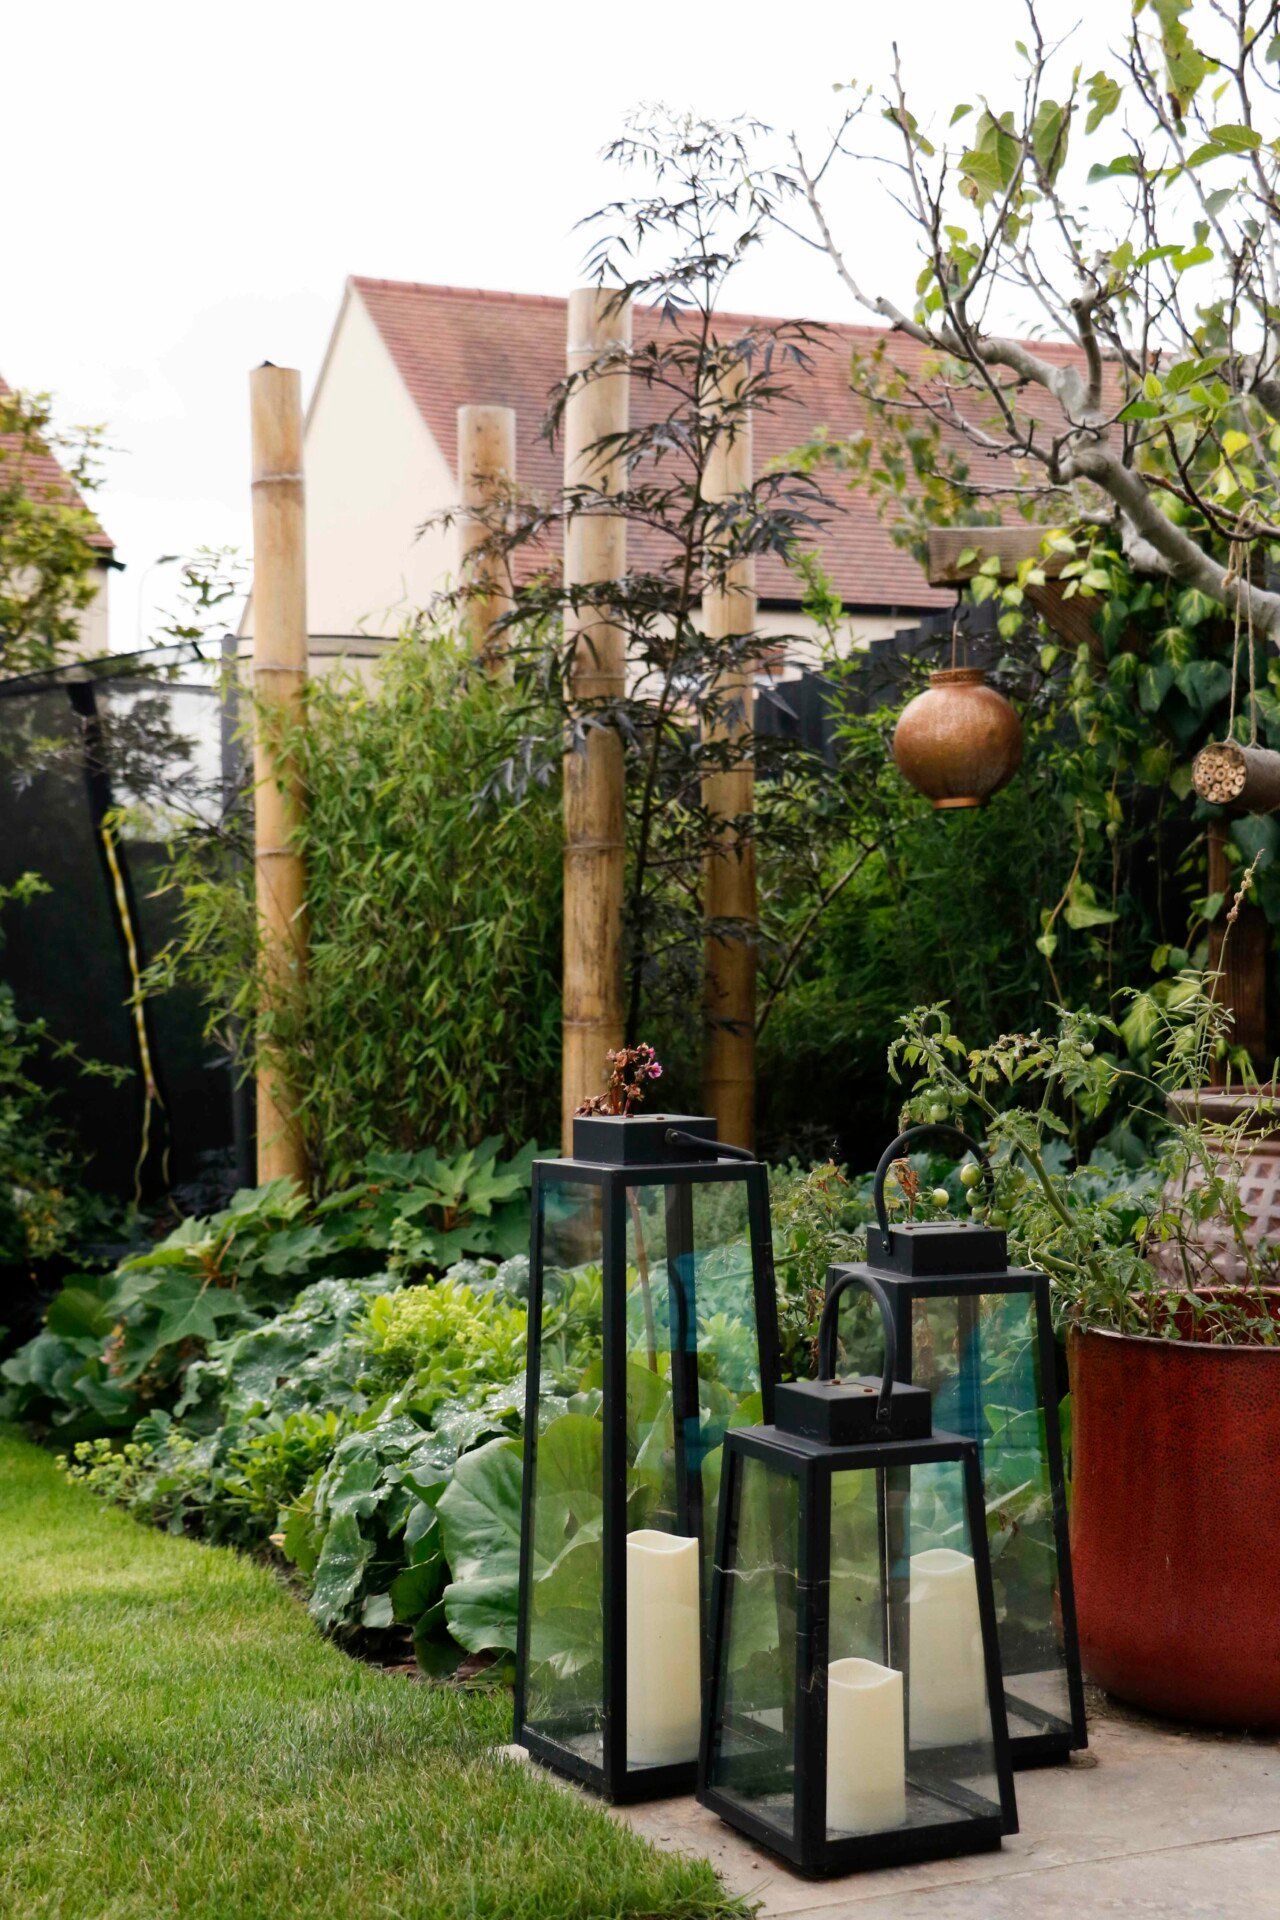 Garden metal lanterns containing candles